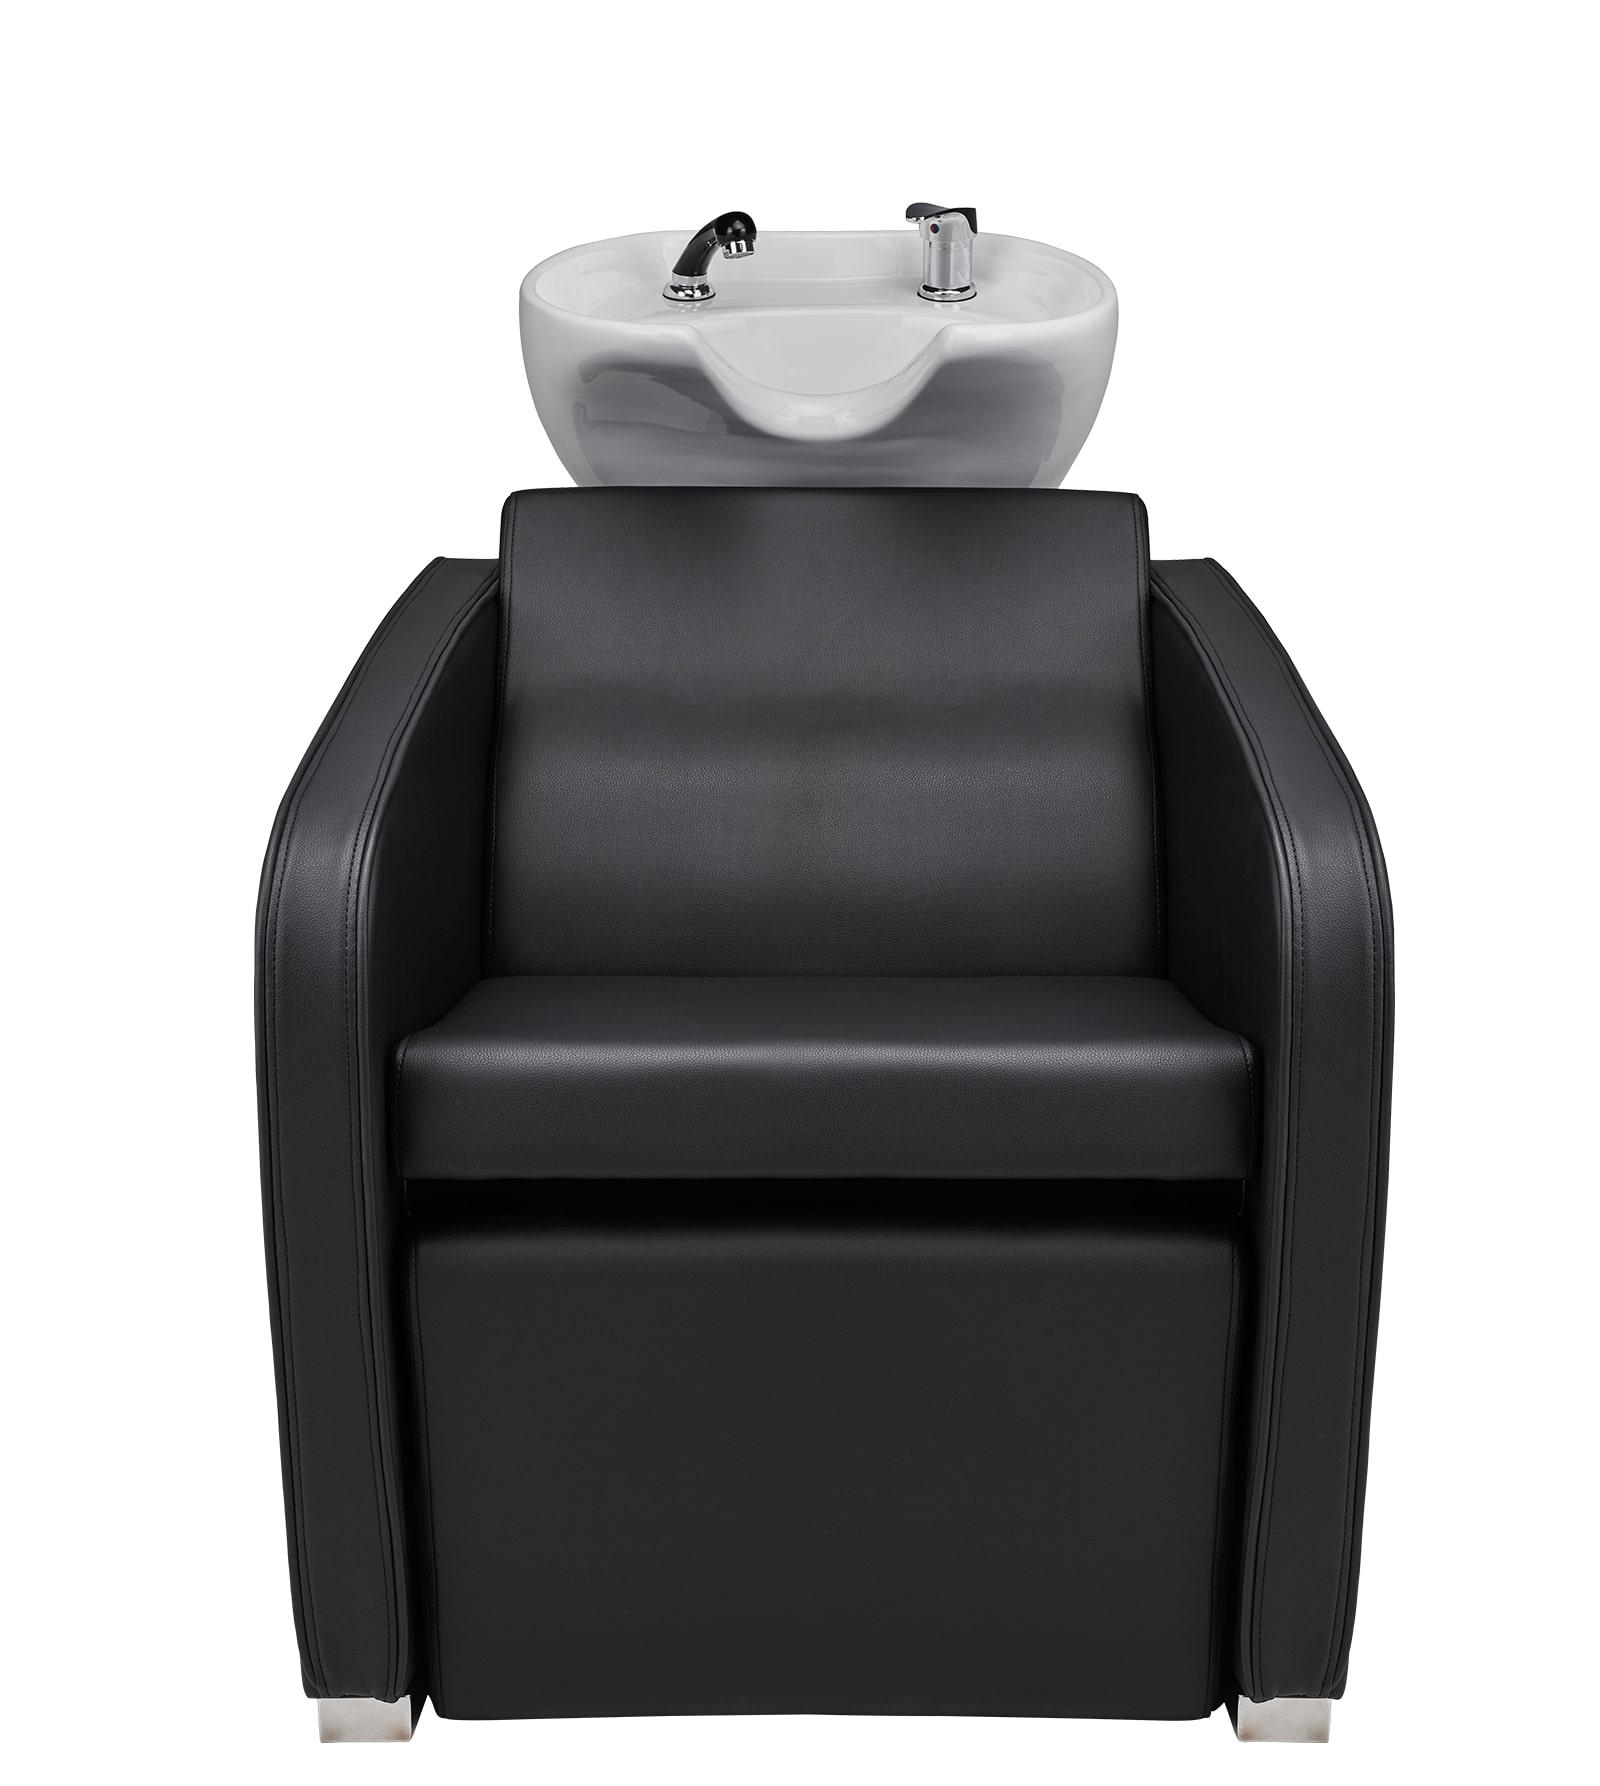 Super Salon Aston - kadeřnický mycí box s elektricky ovládanou opěrkou na nohy